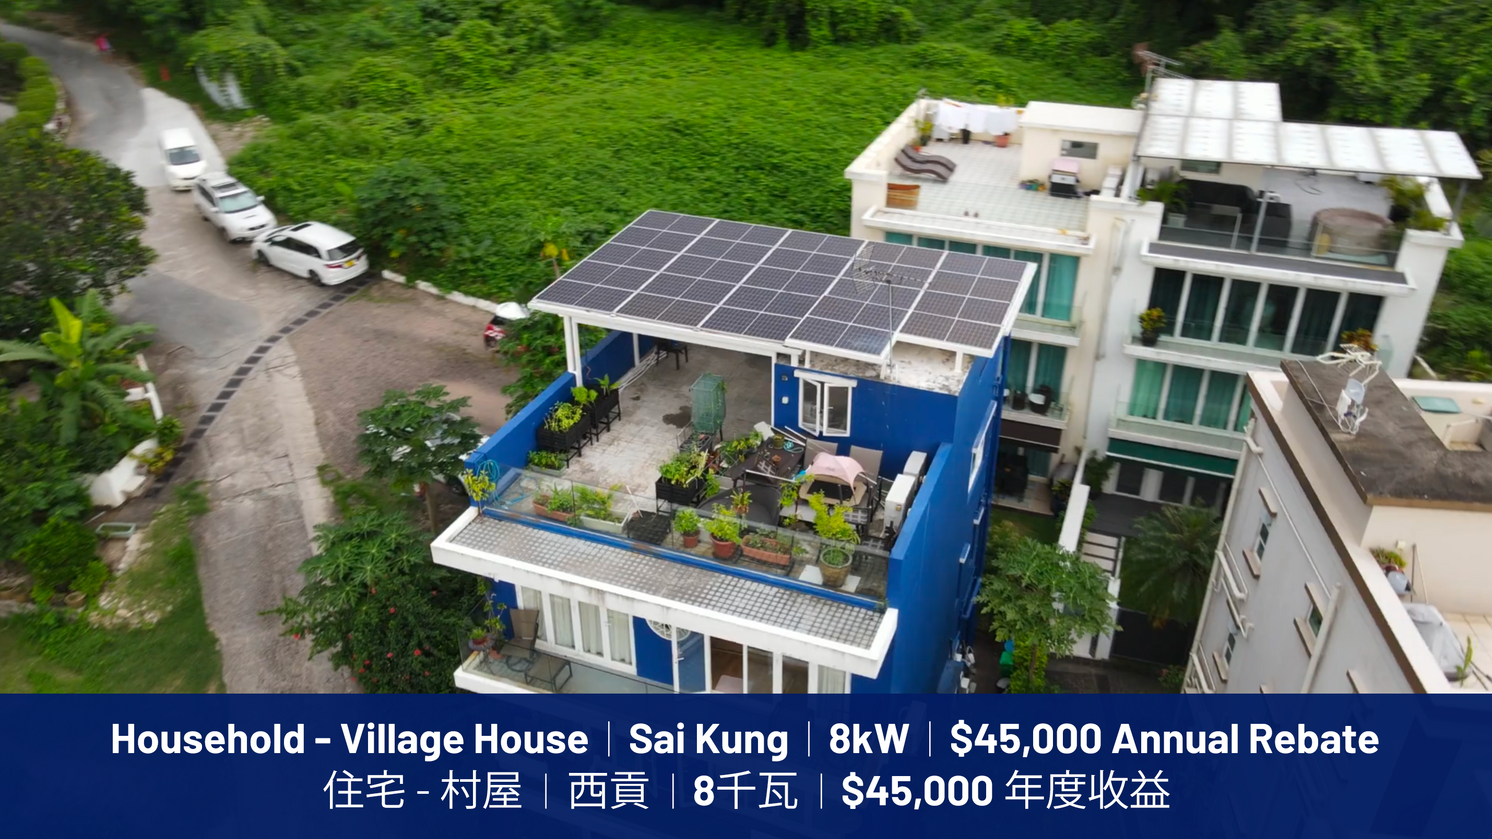 住宅 - 村屋 | 西貢 | 8千瓦 | $45,000 年度收益